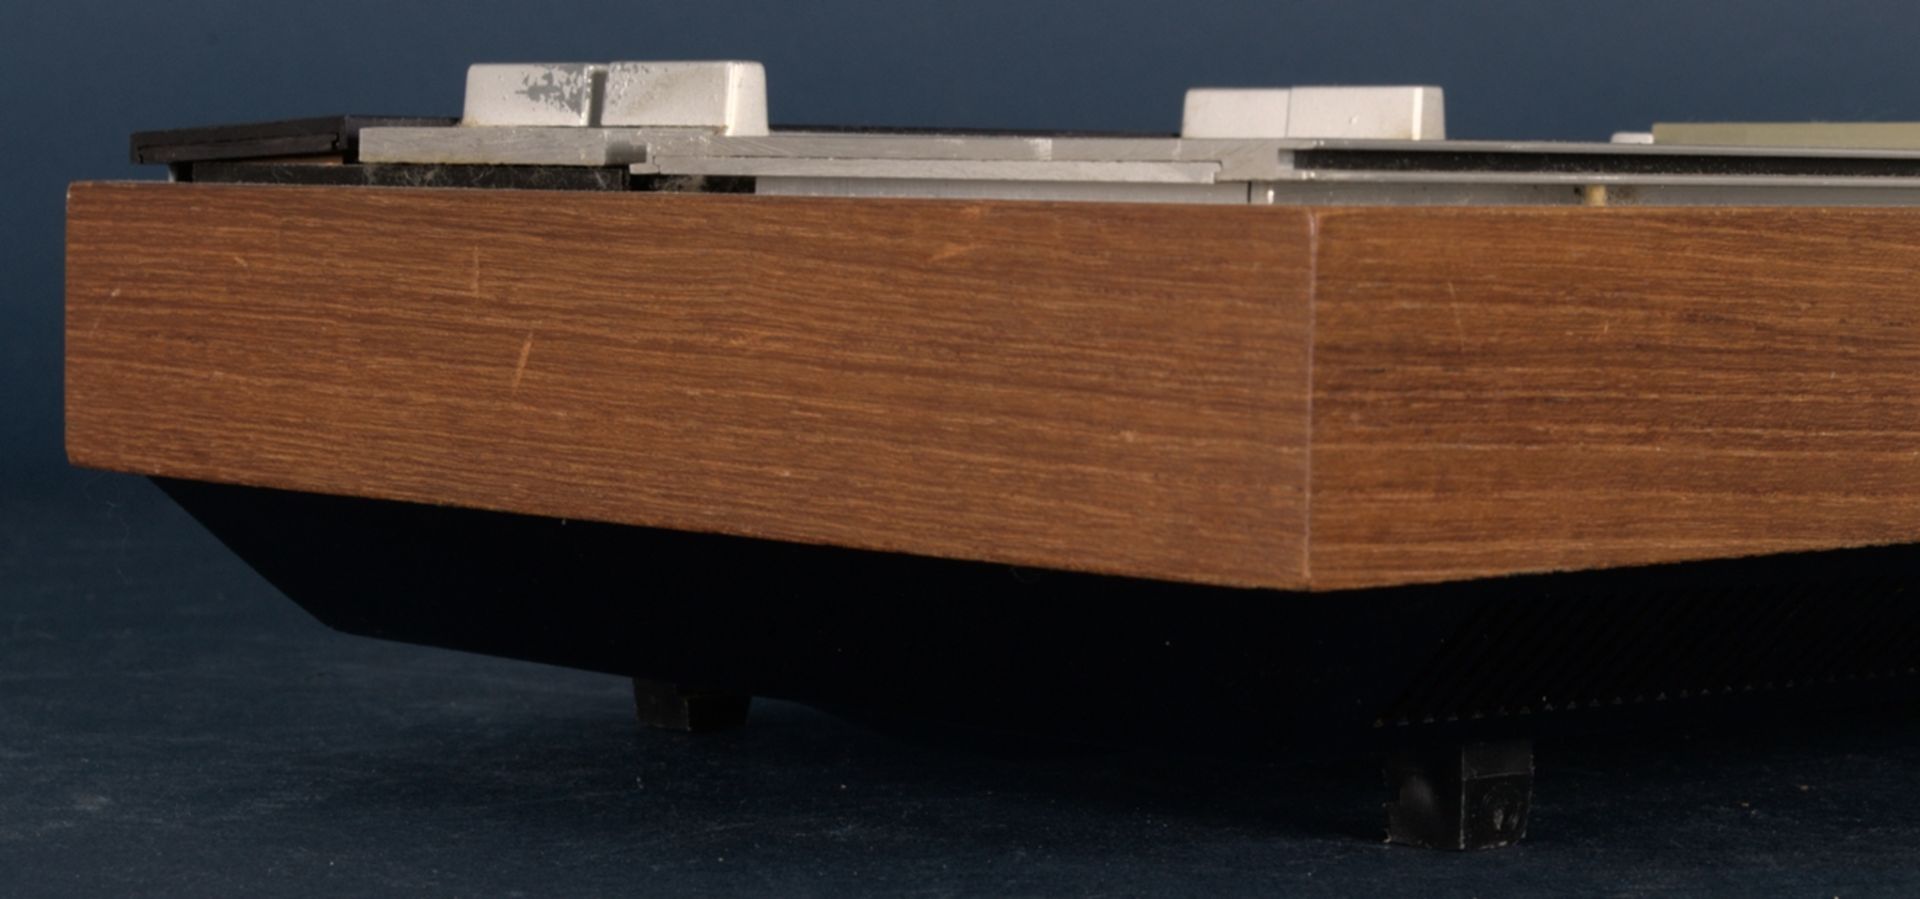 BANG & OLUFSEN "BEOSOUND 1200" - Typ 2501, hergestellt zwischen 1969 und 1972,designed by Jacob - Bild 3 aus 6